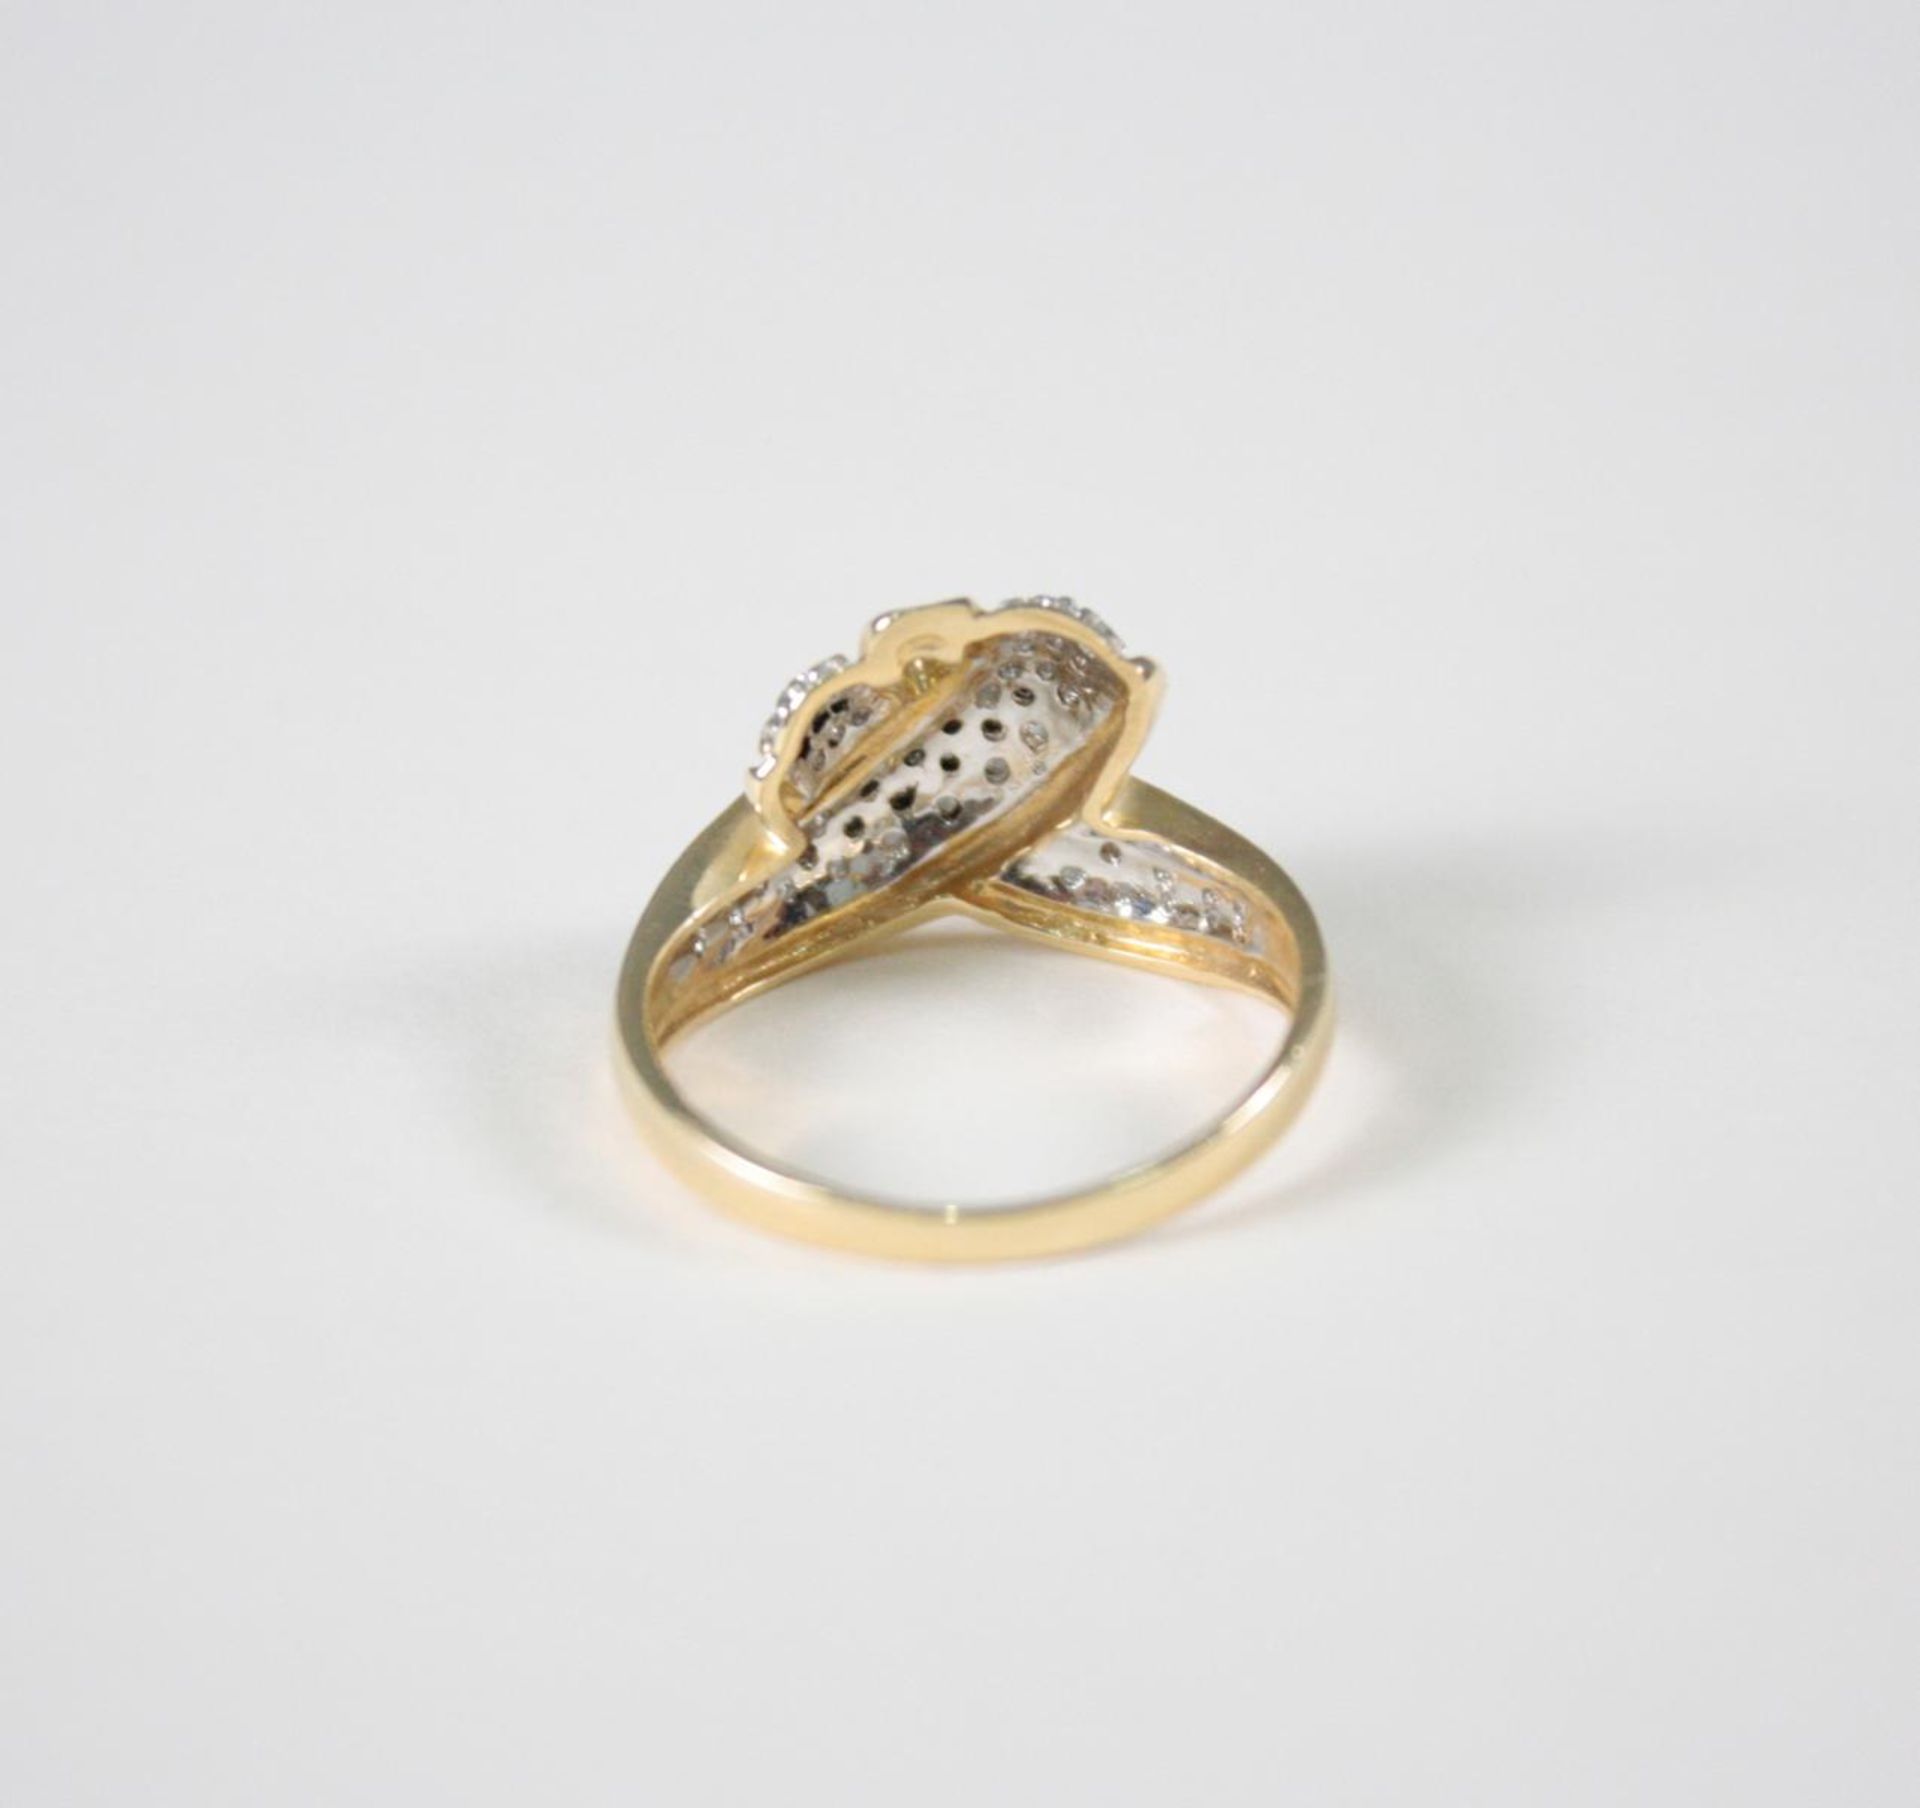 Damenring mit Diamanten, 14 Karat GelbgoldÜber 40 Diamant von jeweils ca. 0,01 Karat, Ringgröße - Bild 3 aus 3